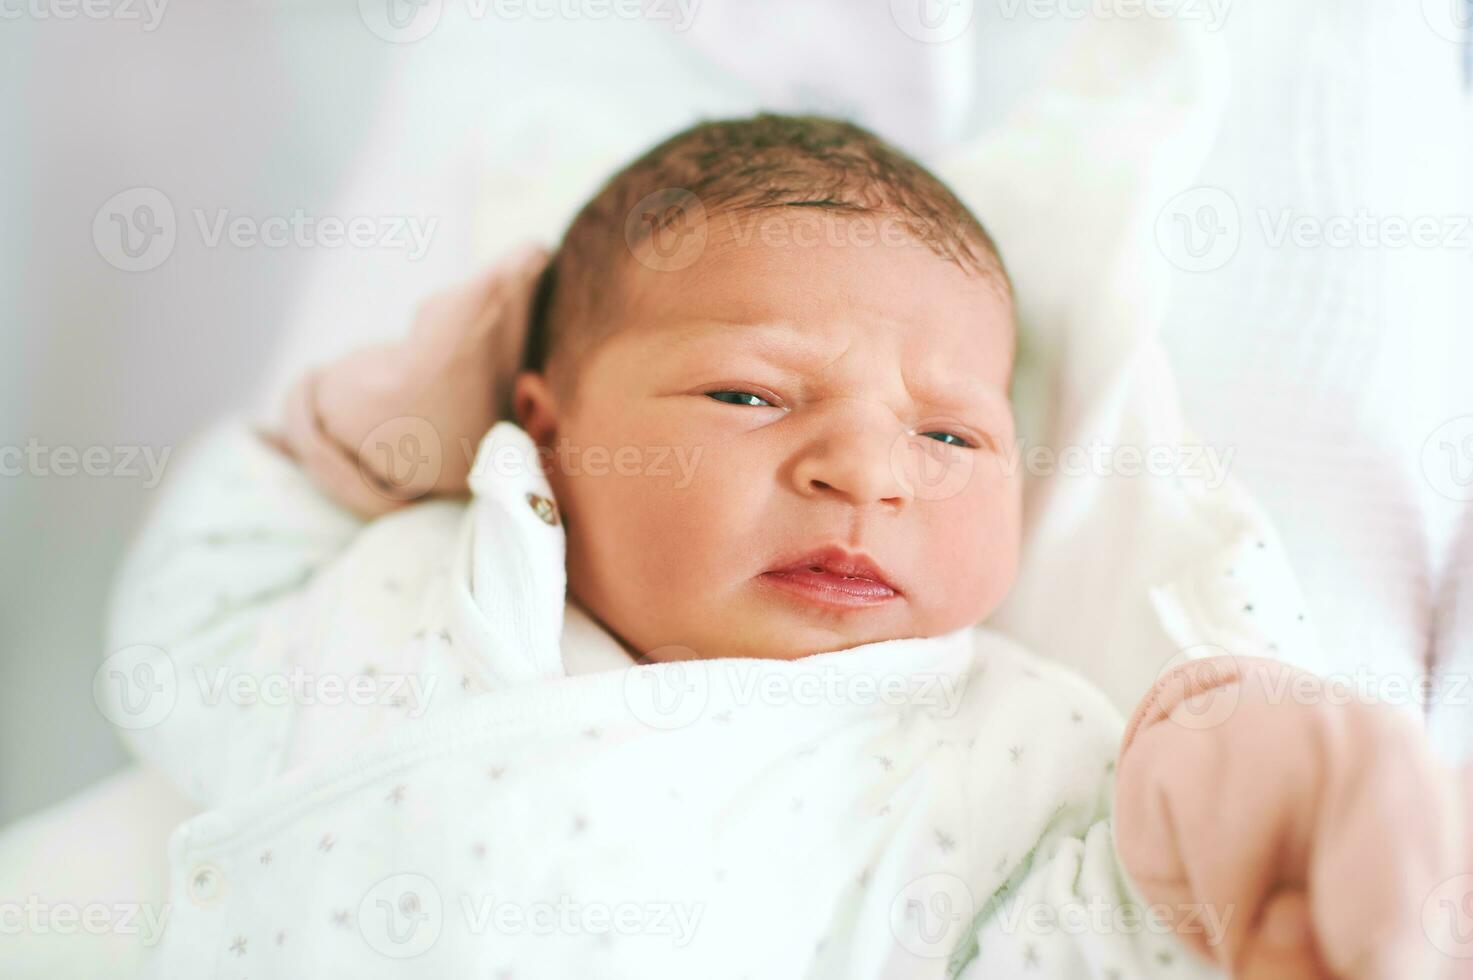 porträtt av förtjusande nyfödd bebis liggande i sjukhus spjälsäng foto